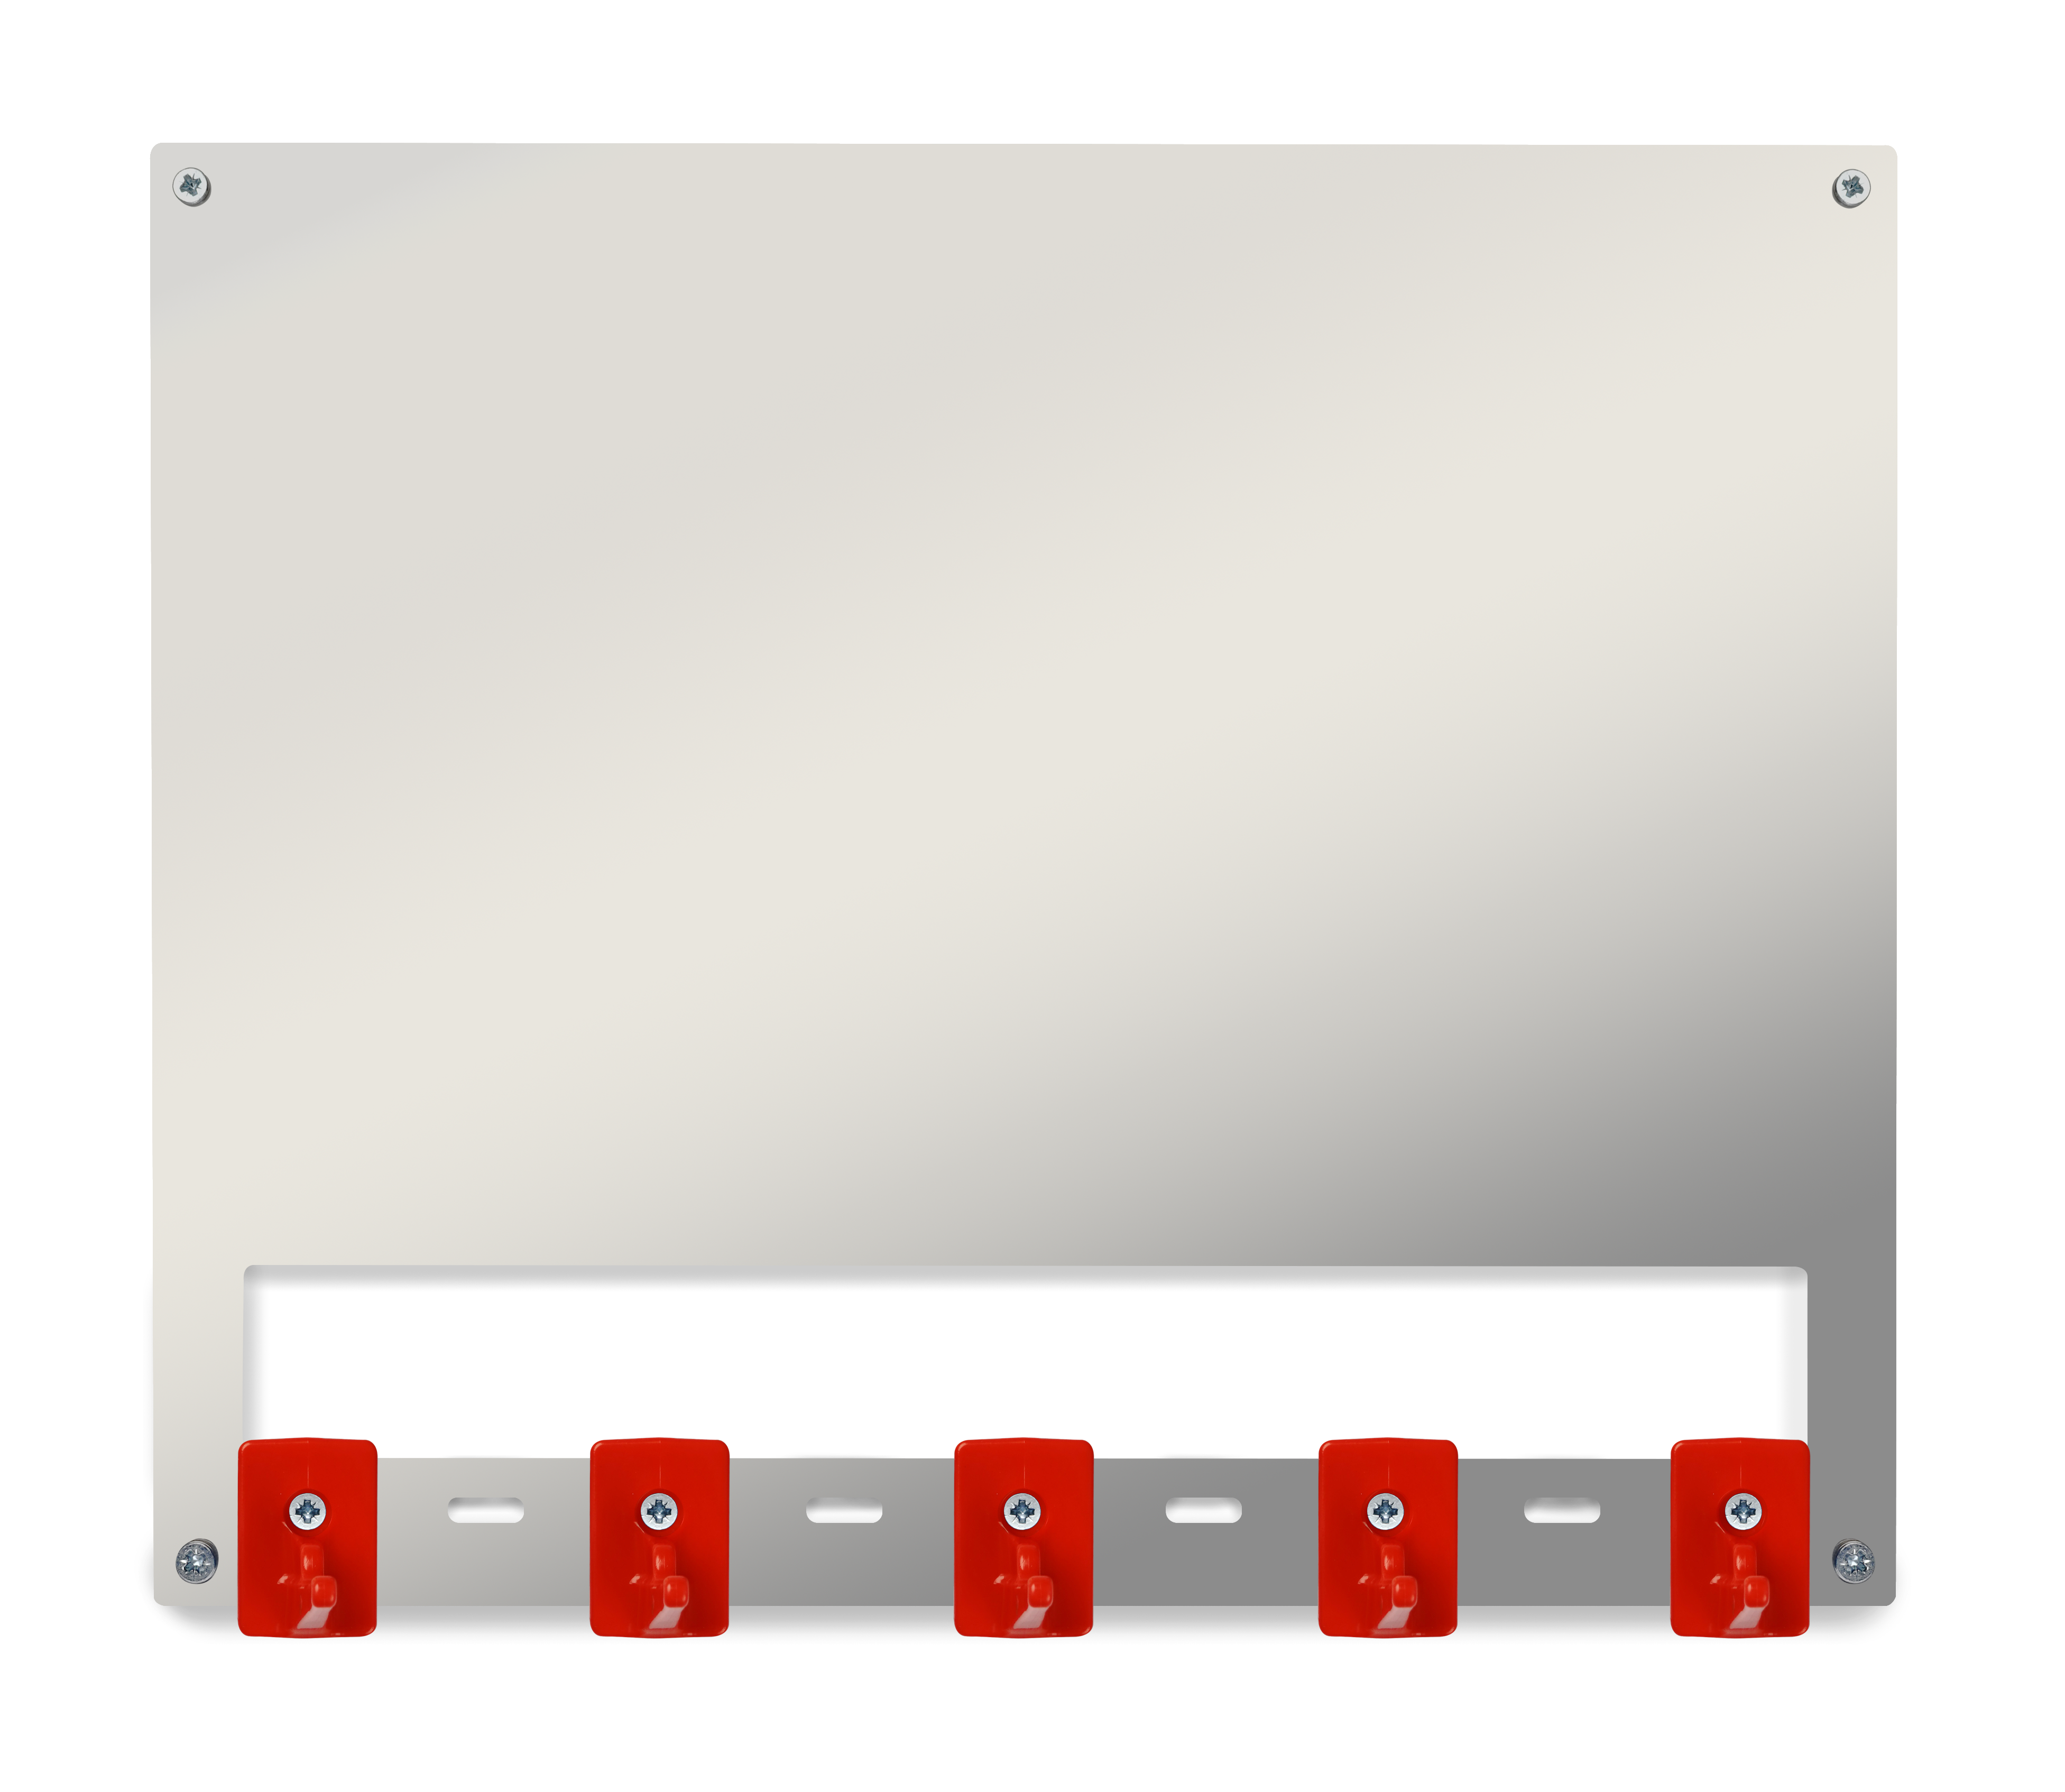 Органайзер настенный c инф.полем А4 HACCPER Control Point для 5 предметов, красный +  арт.SAN0023-4